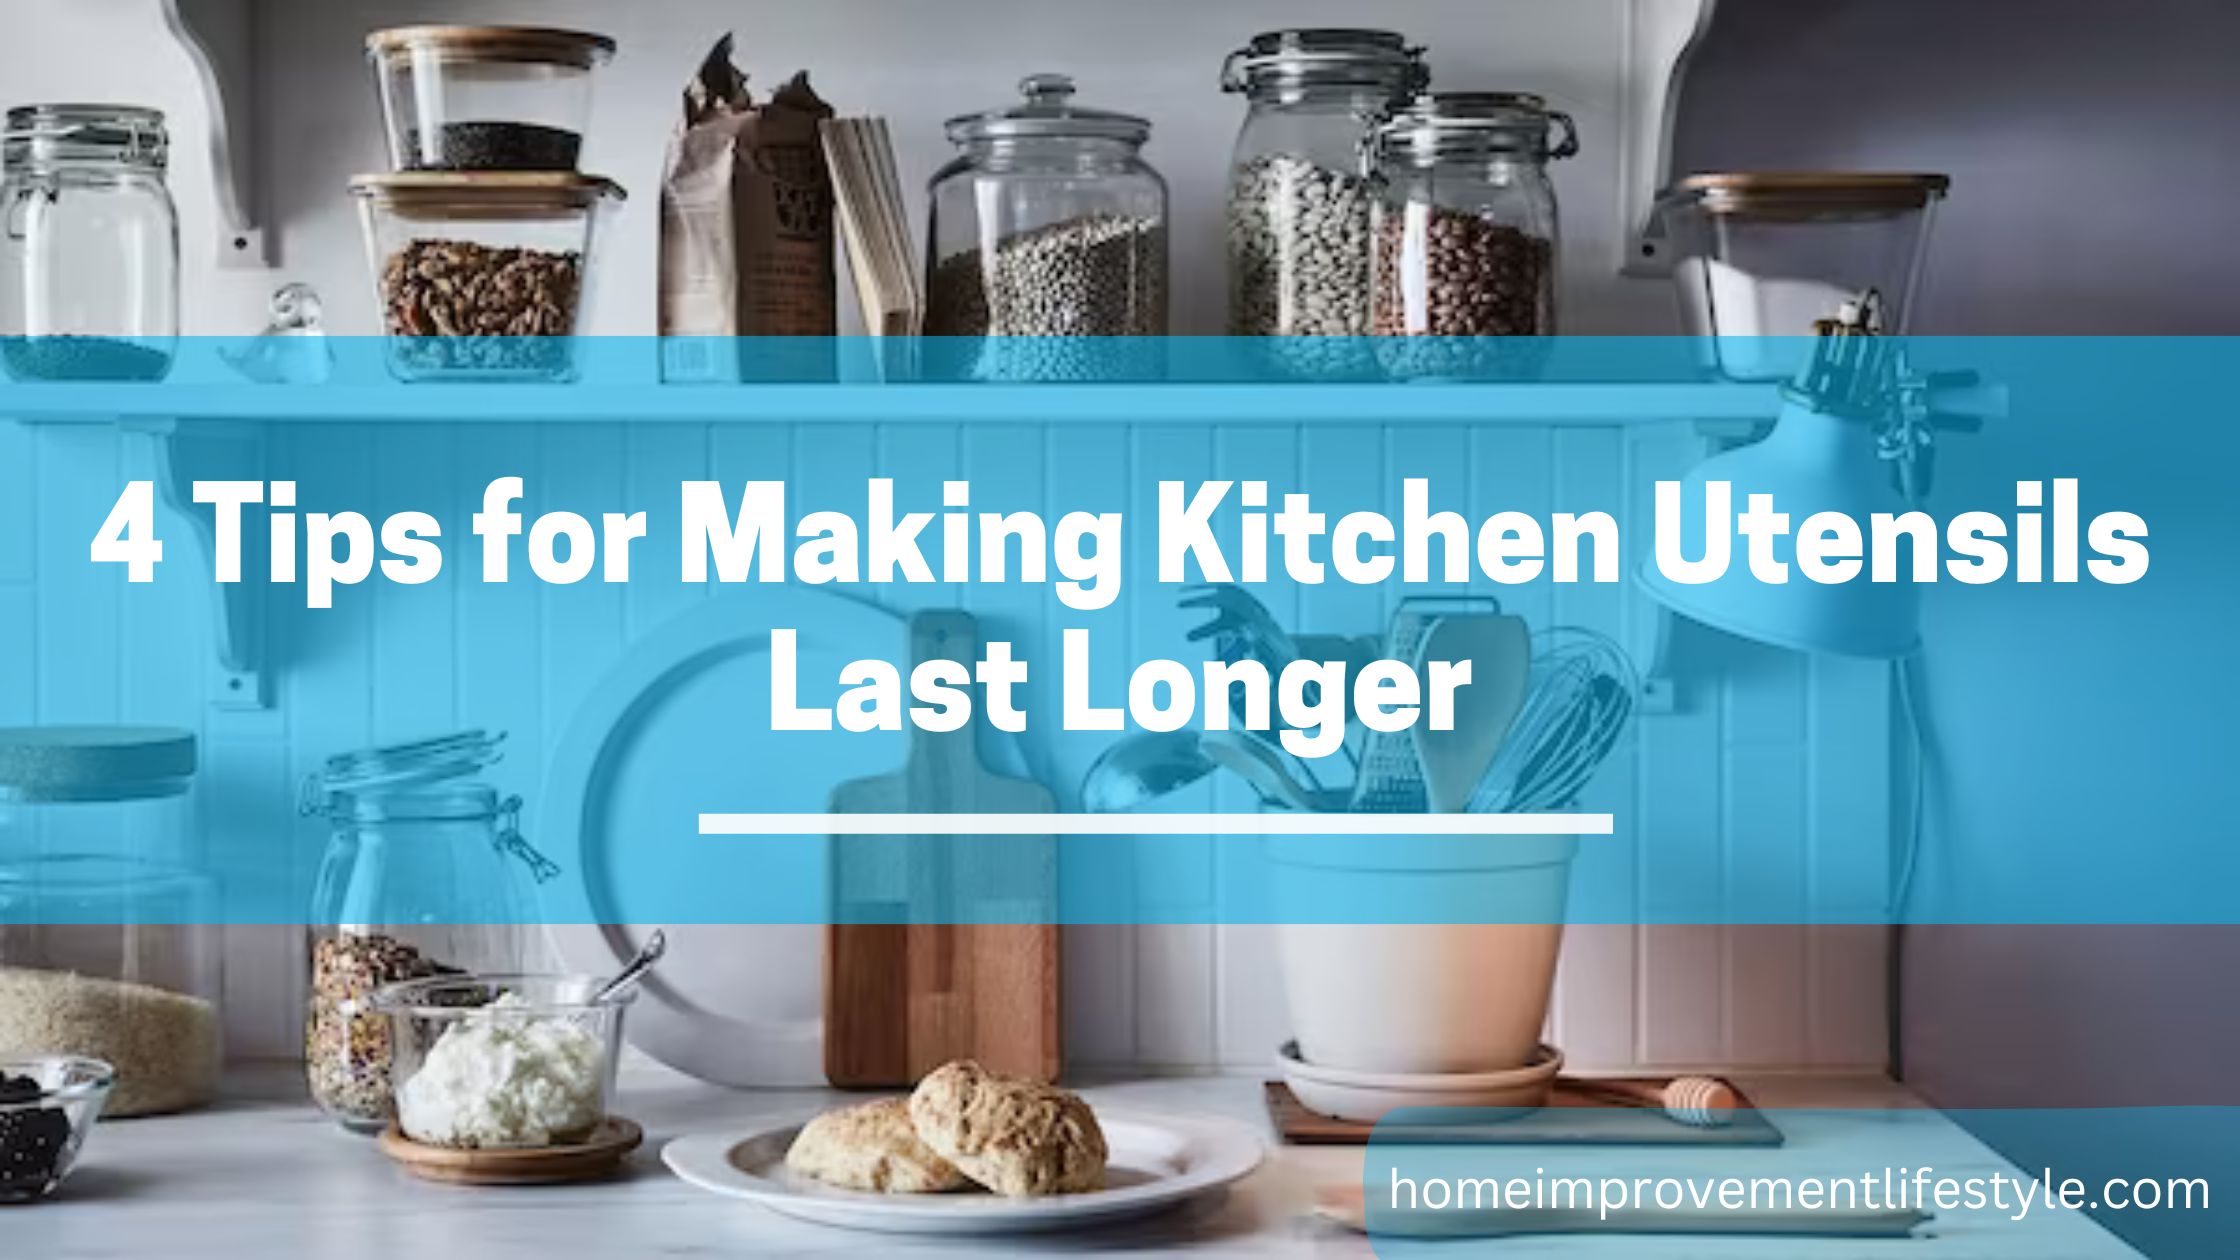 4 Tips for Making Kitchen Utensils Last Longer